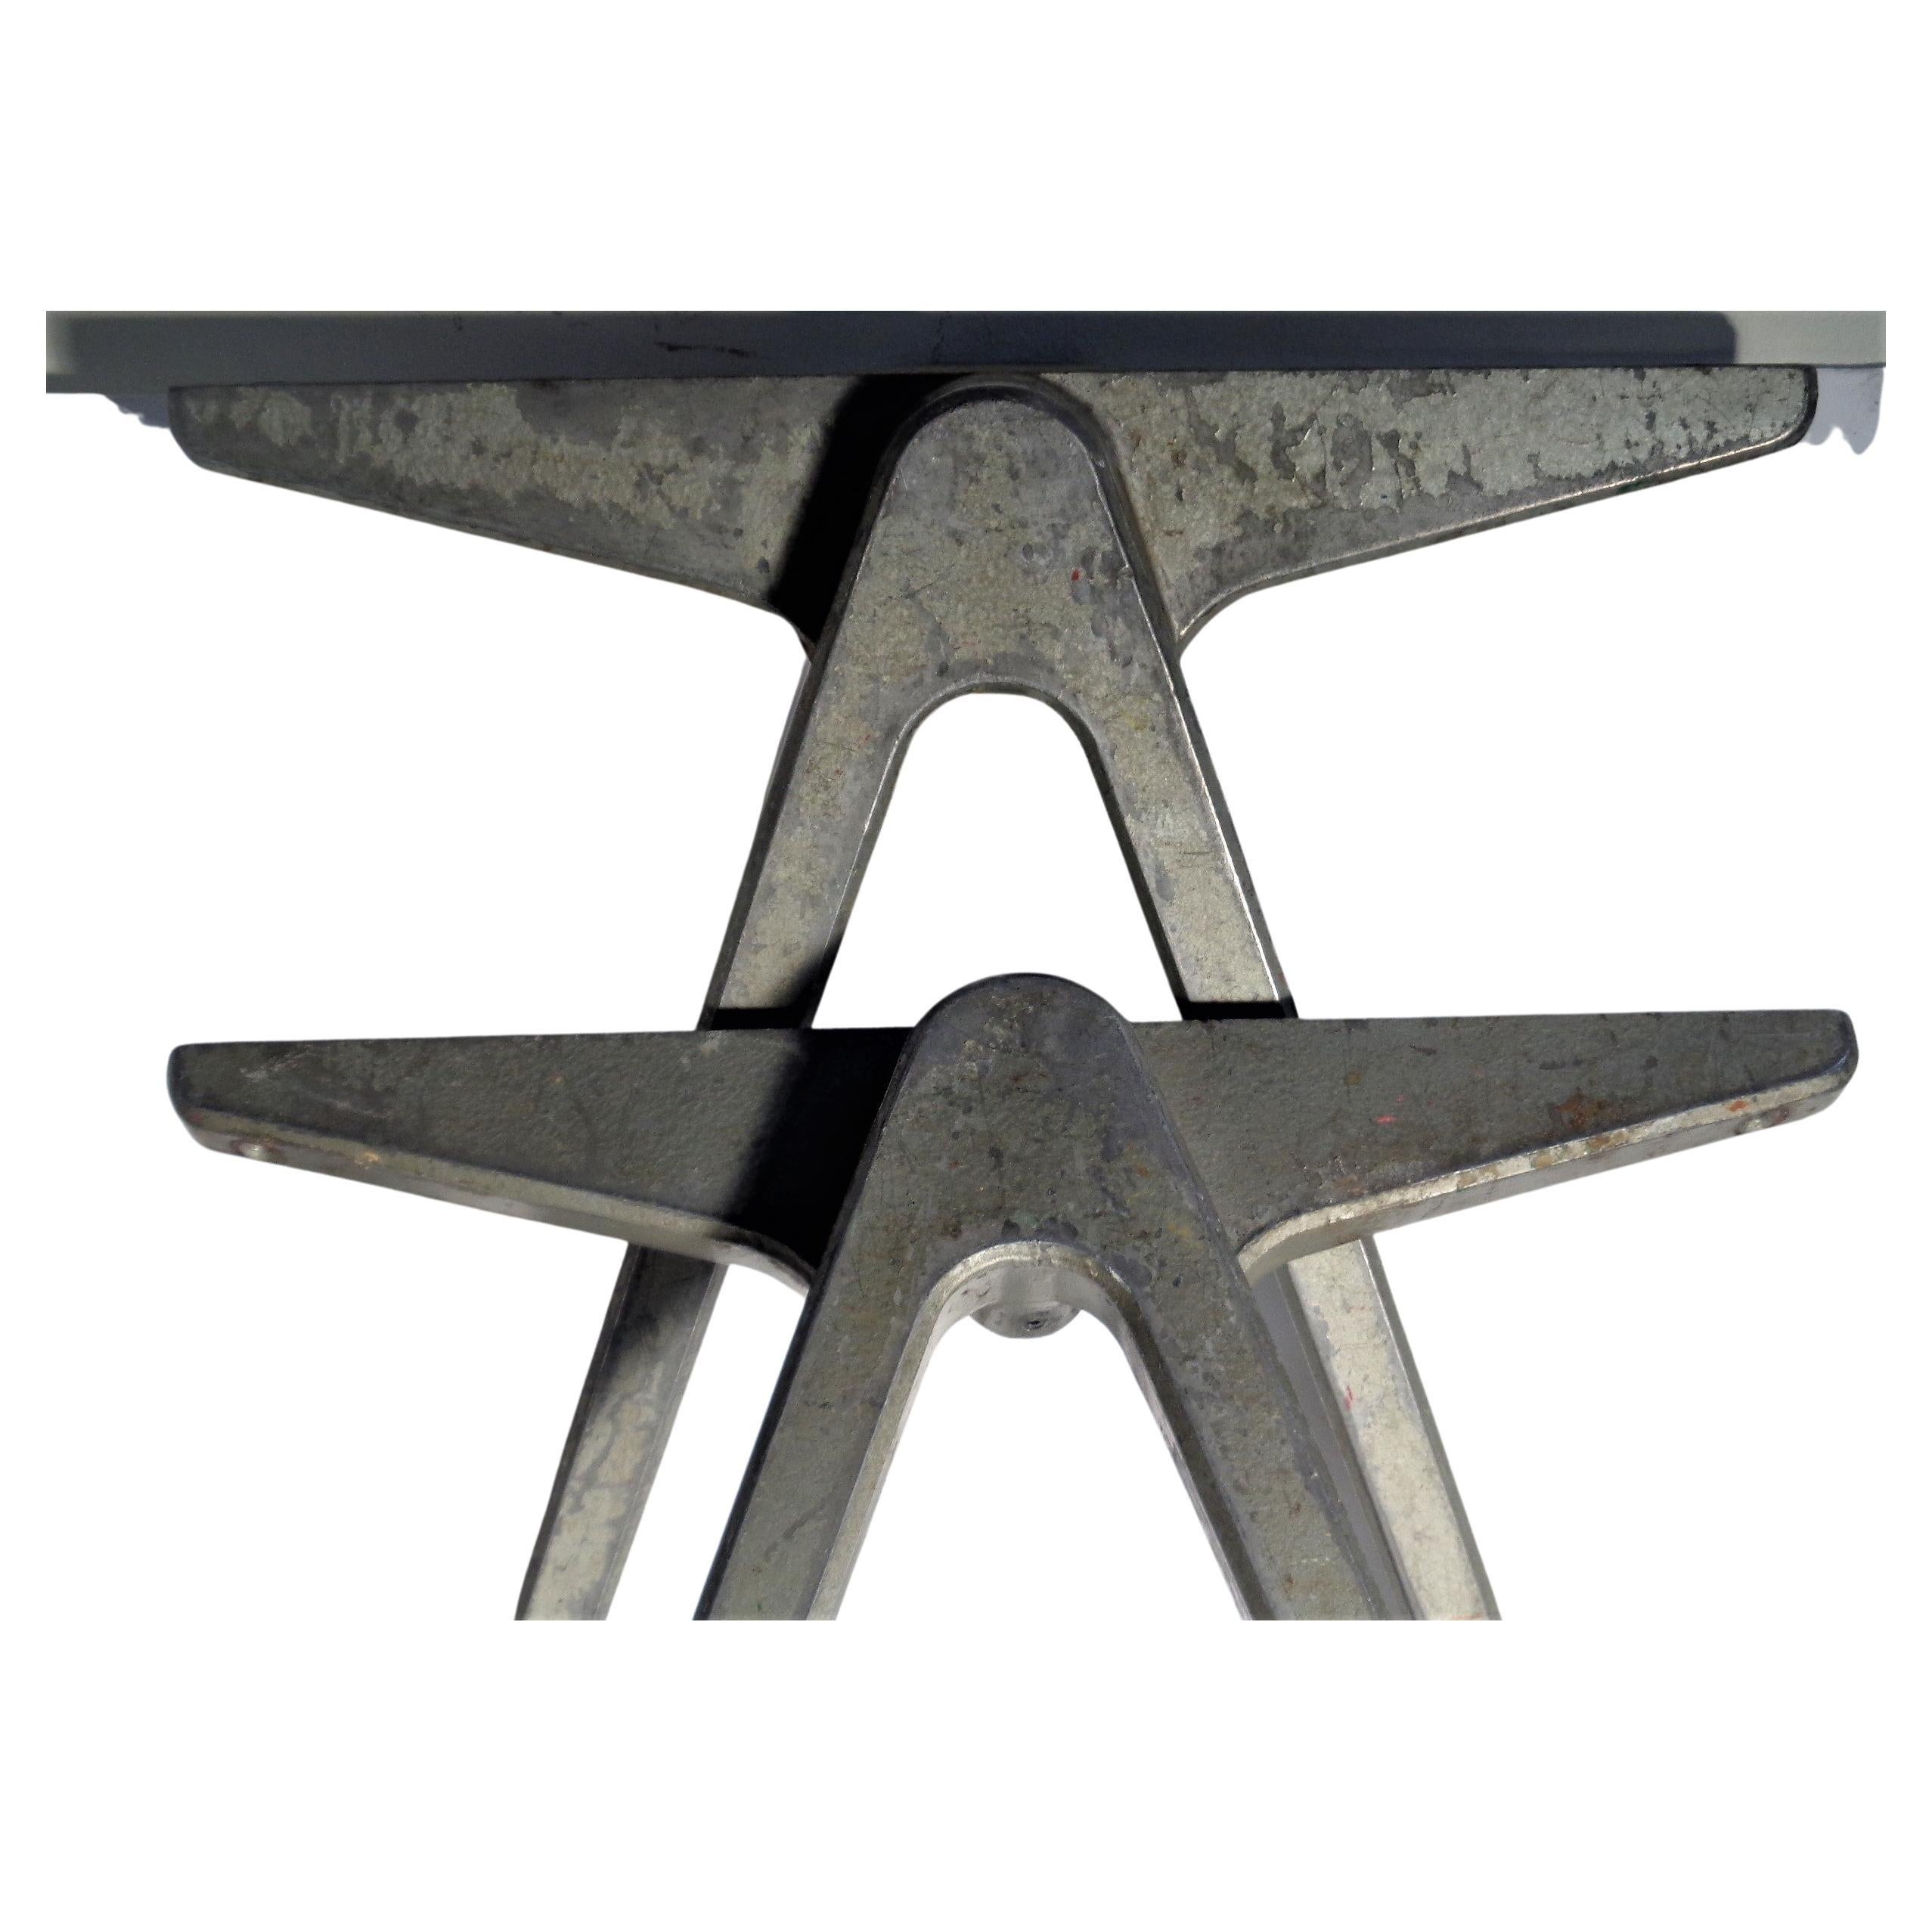  Kompass-Tischbeine aus Aluminium im Jean Prouve-Stil von James Leonard für Esavian  (Englisch)